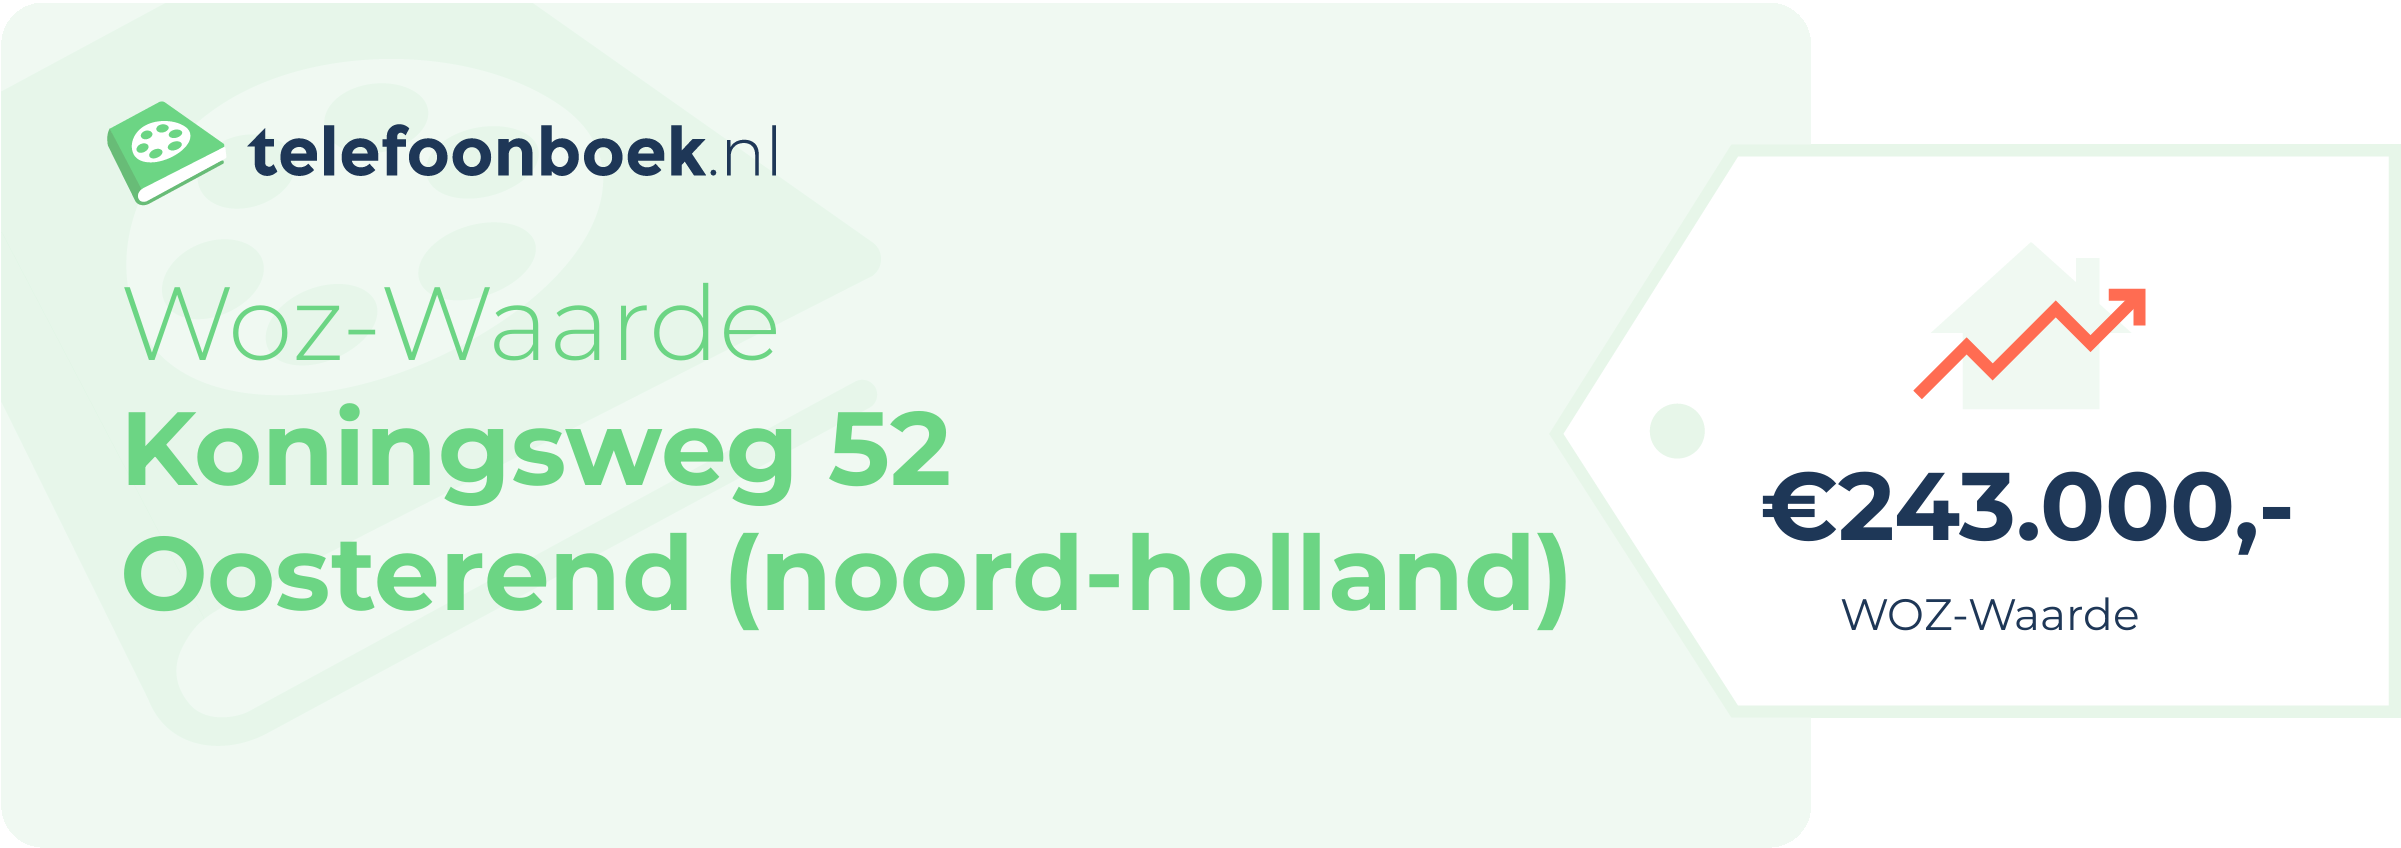 WOZ-waarde Koningsweg 52 Oosterend (Noord-Holland)